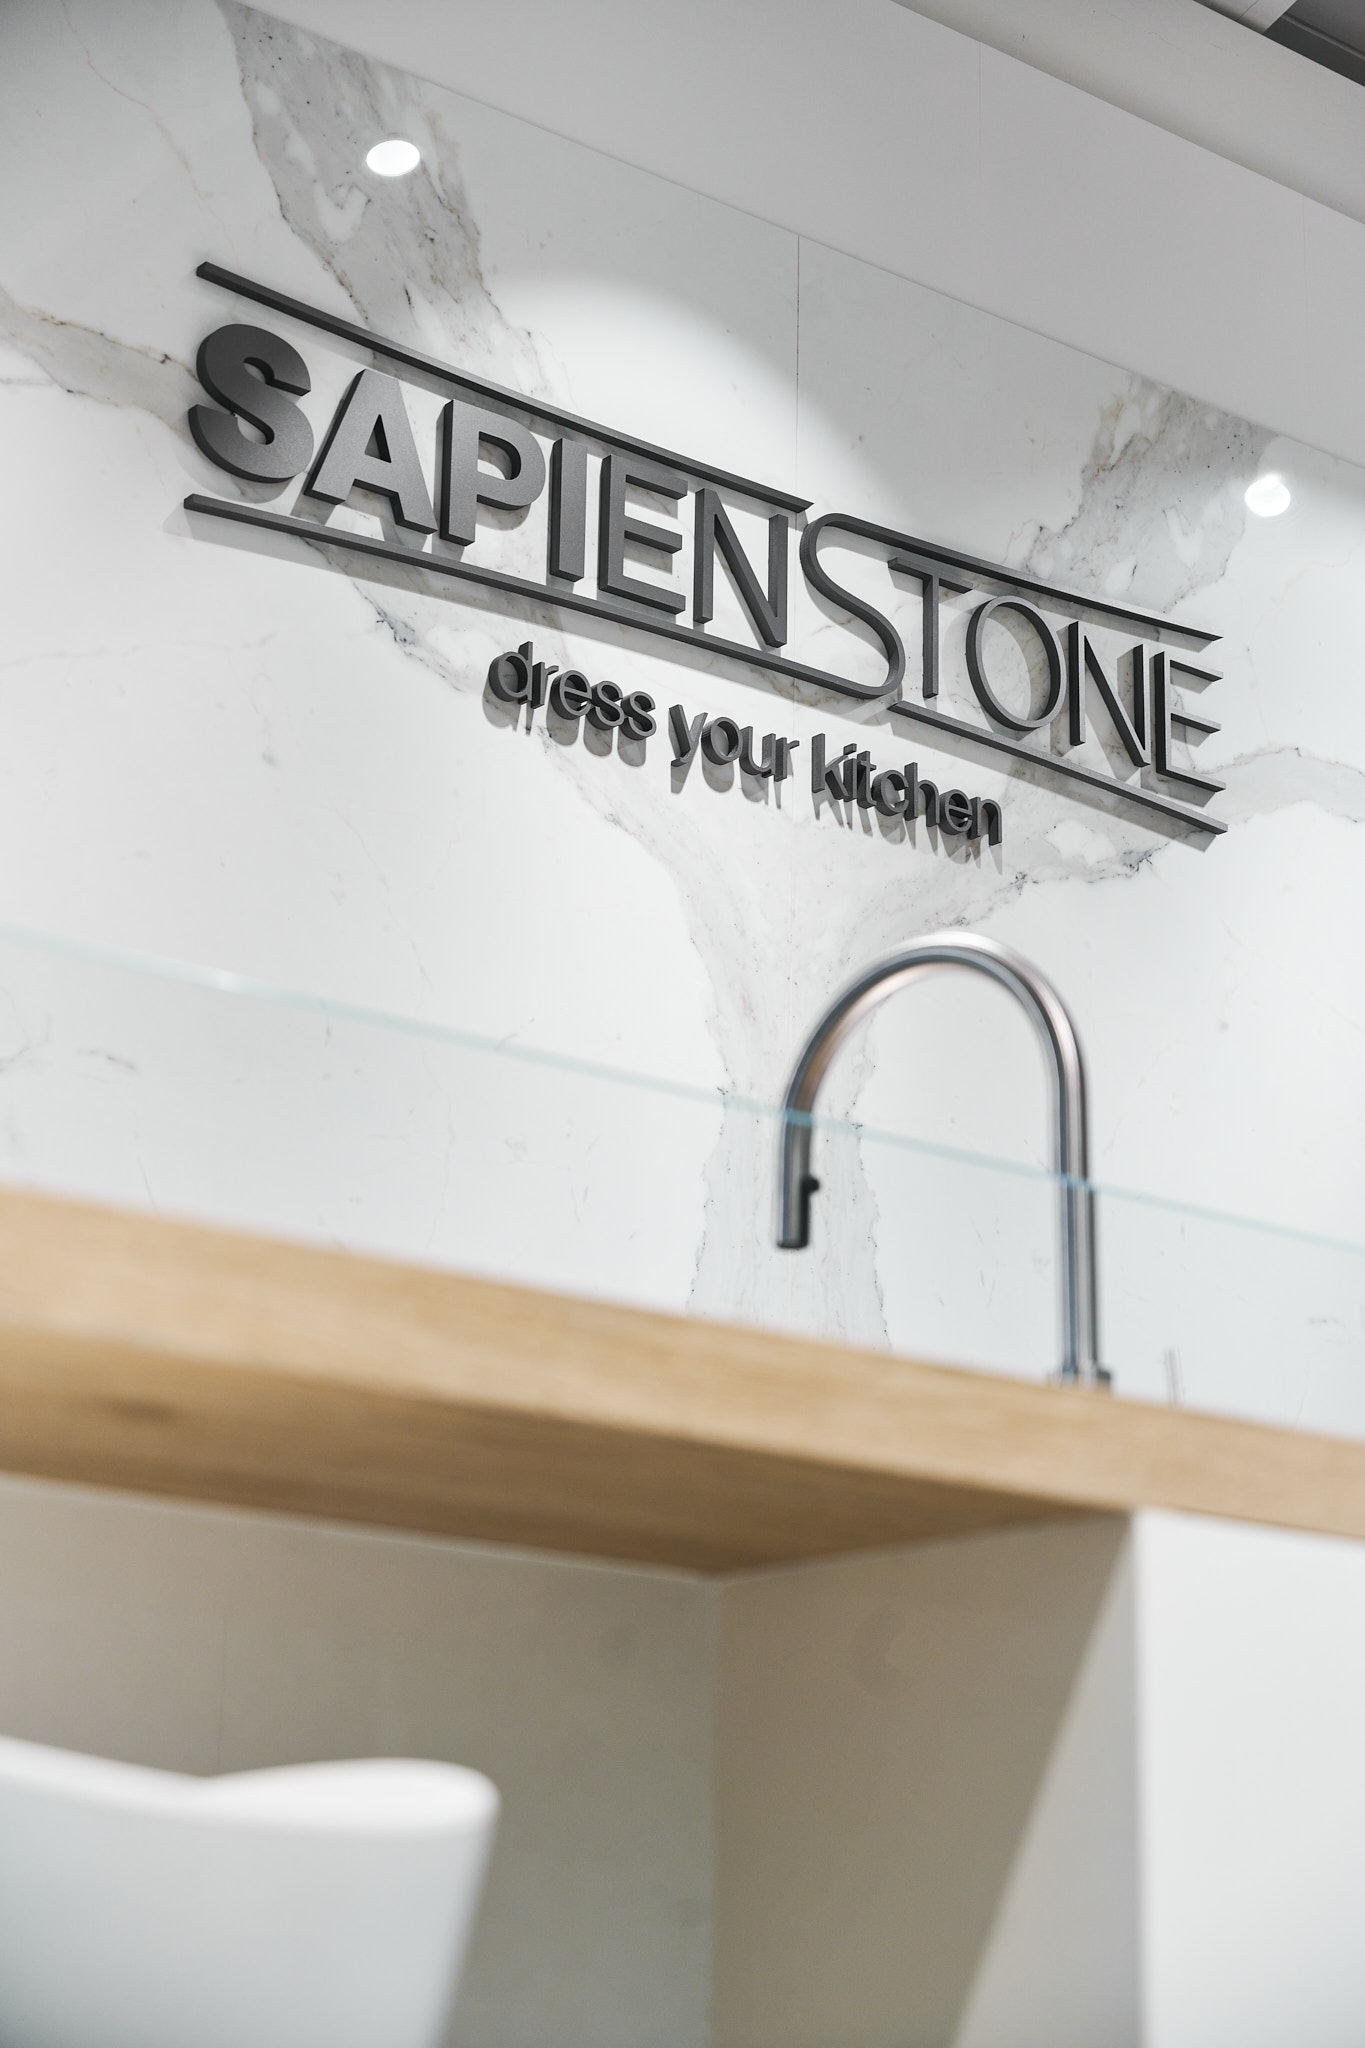 SapienStone renueva el showroom de Castellarano